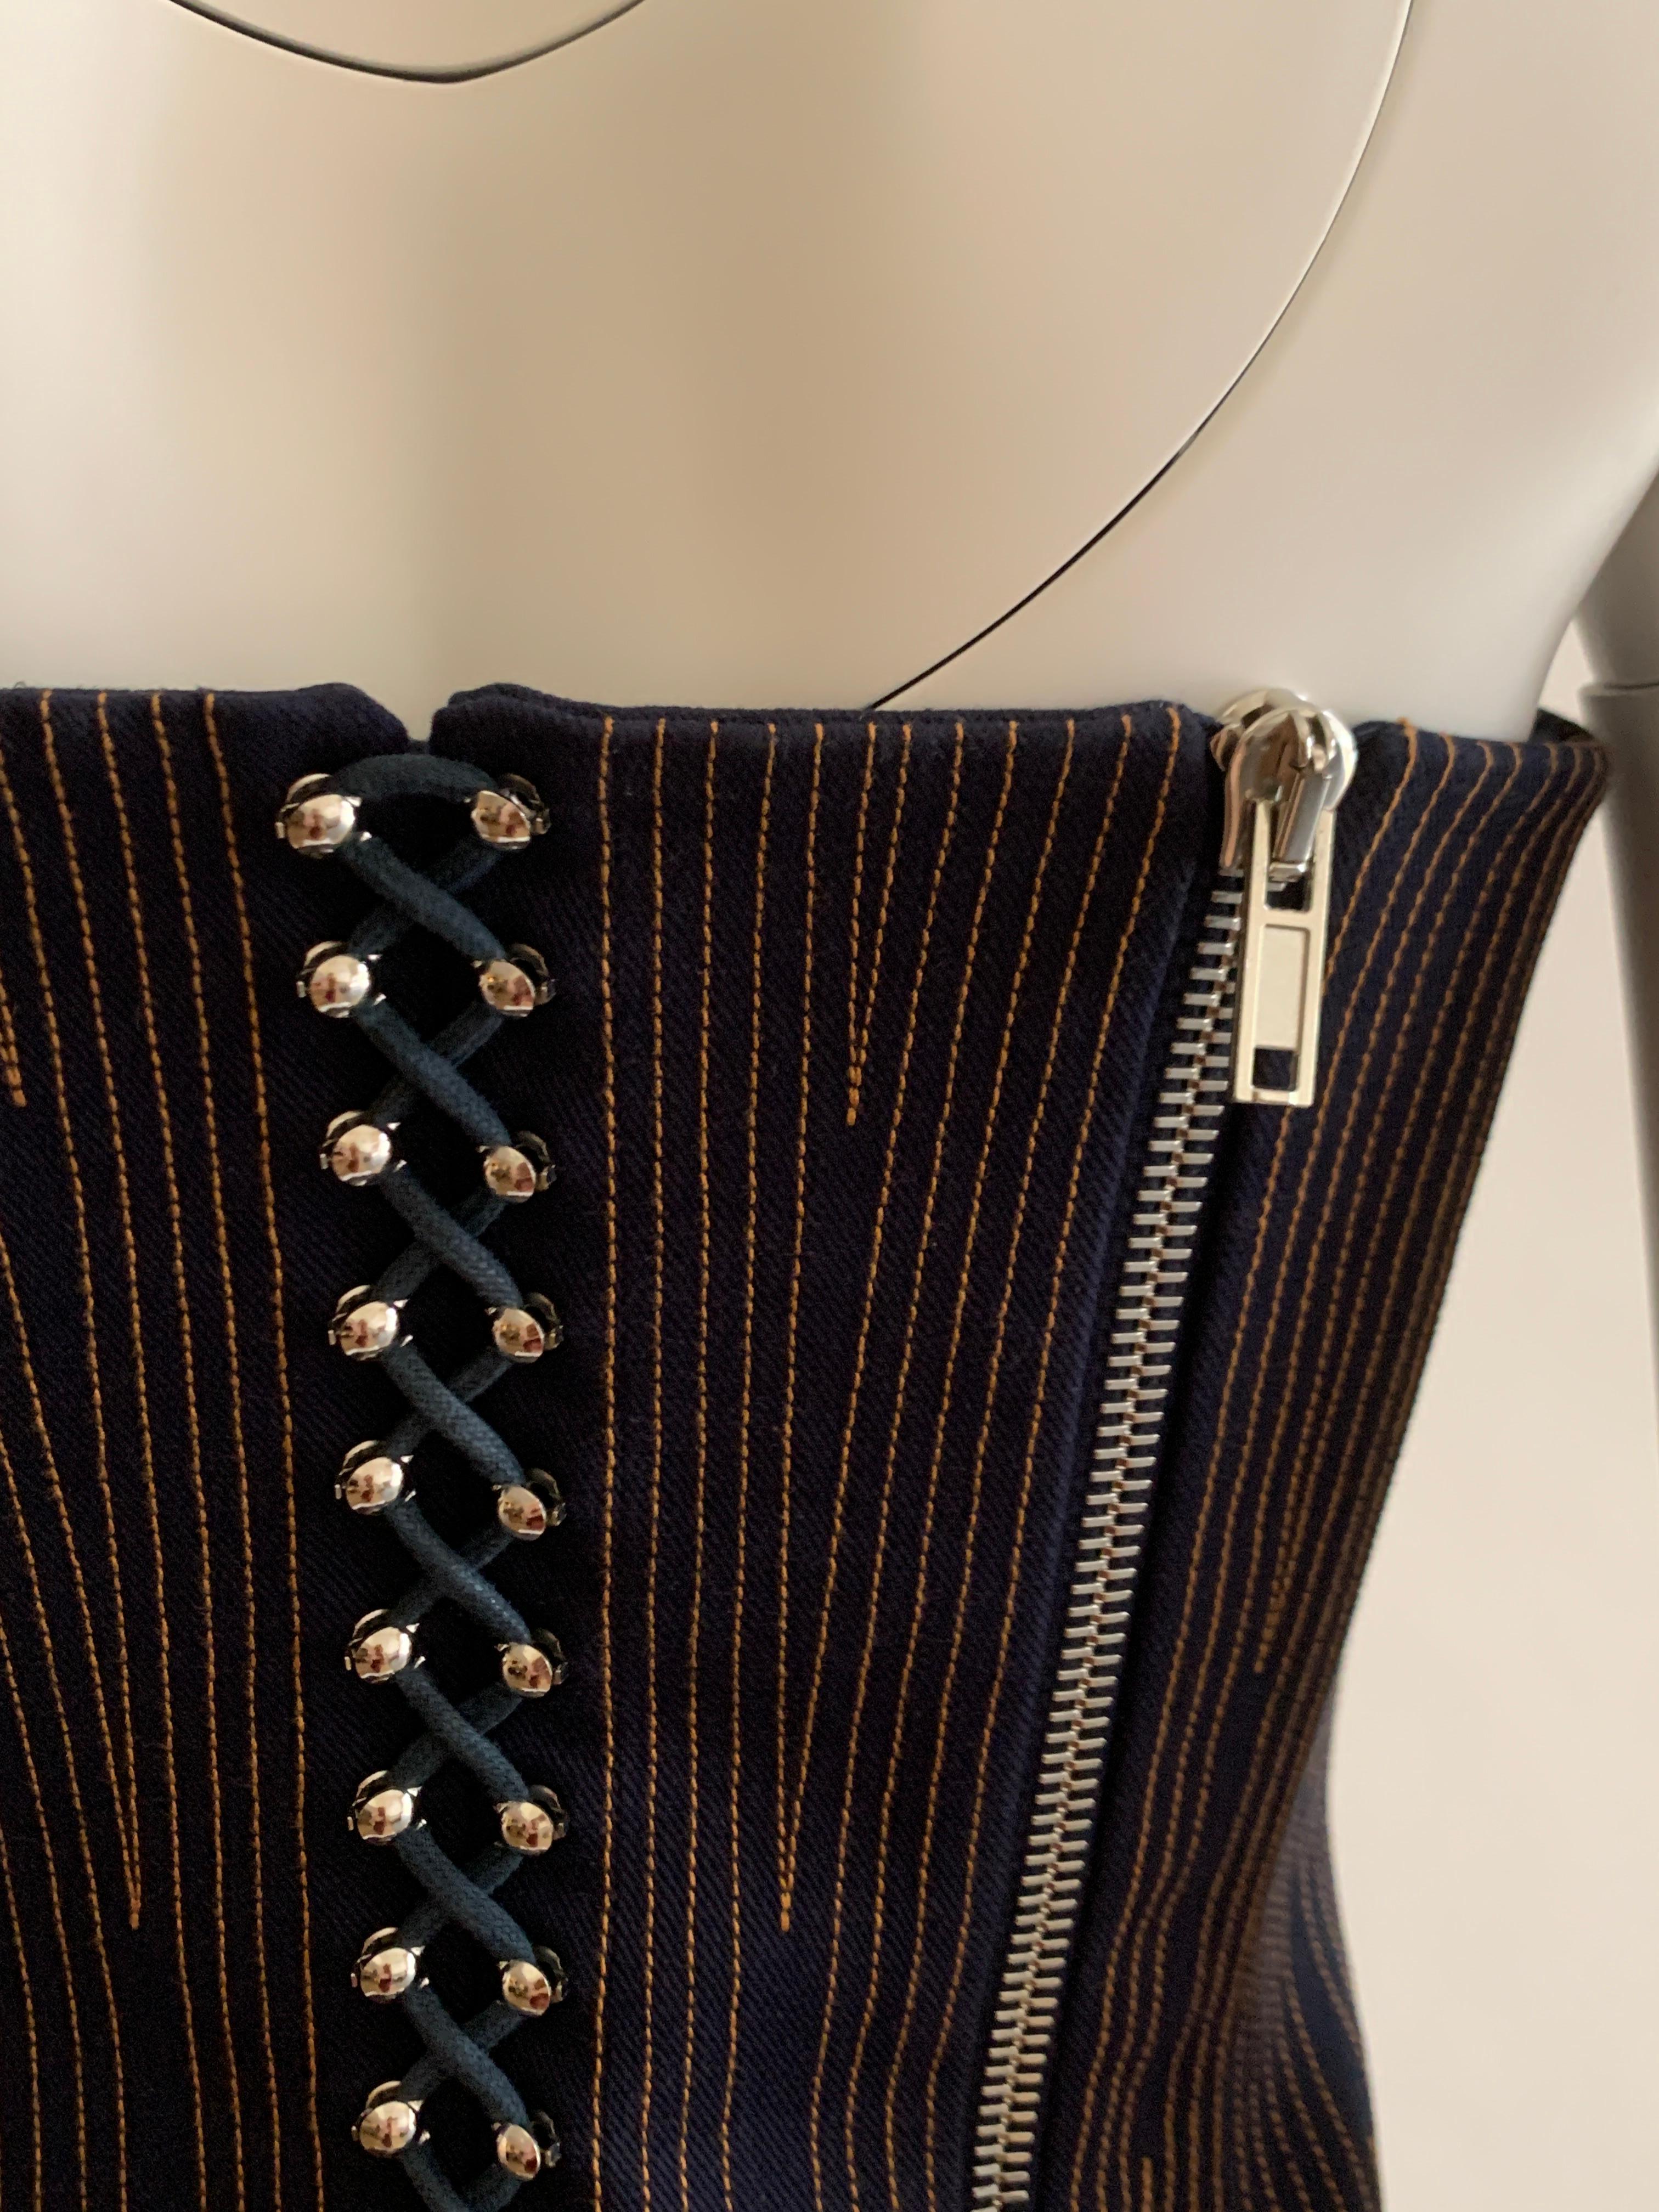 Black Givenchy Dark Denim Bustier Corset Strapless Top Stitch and Zipper Detail